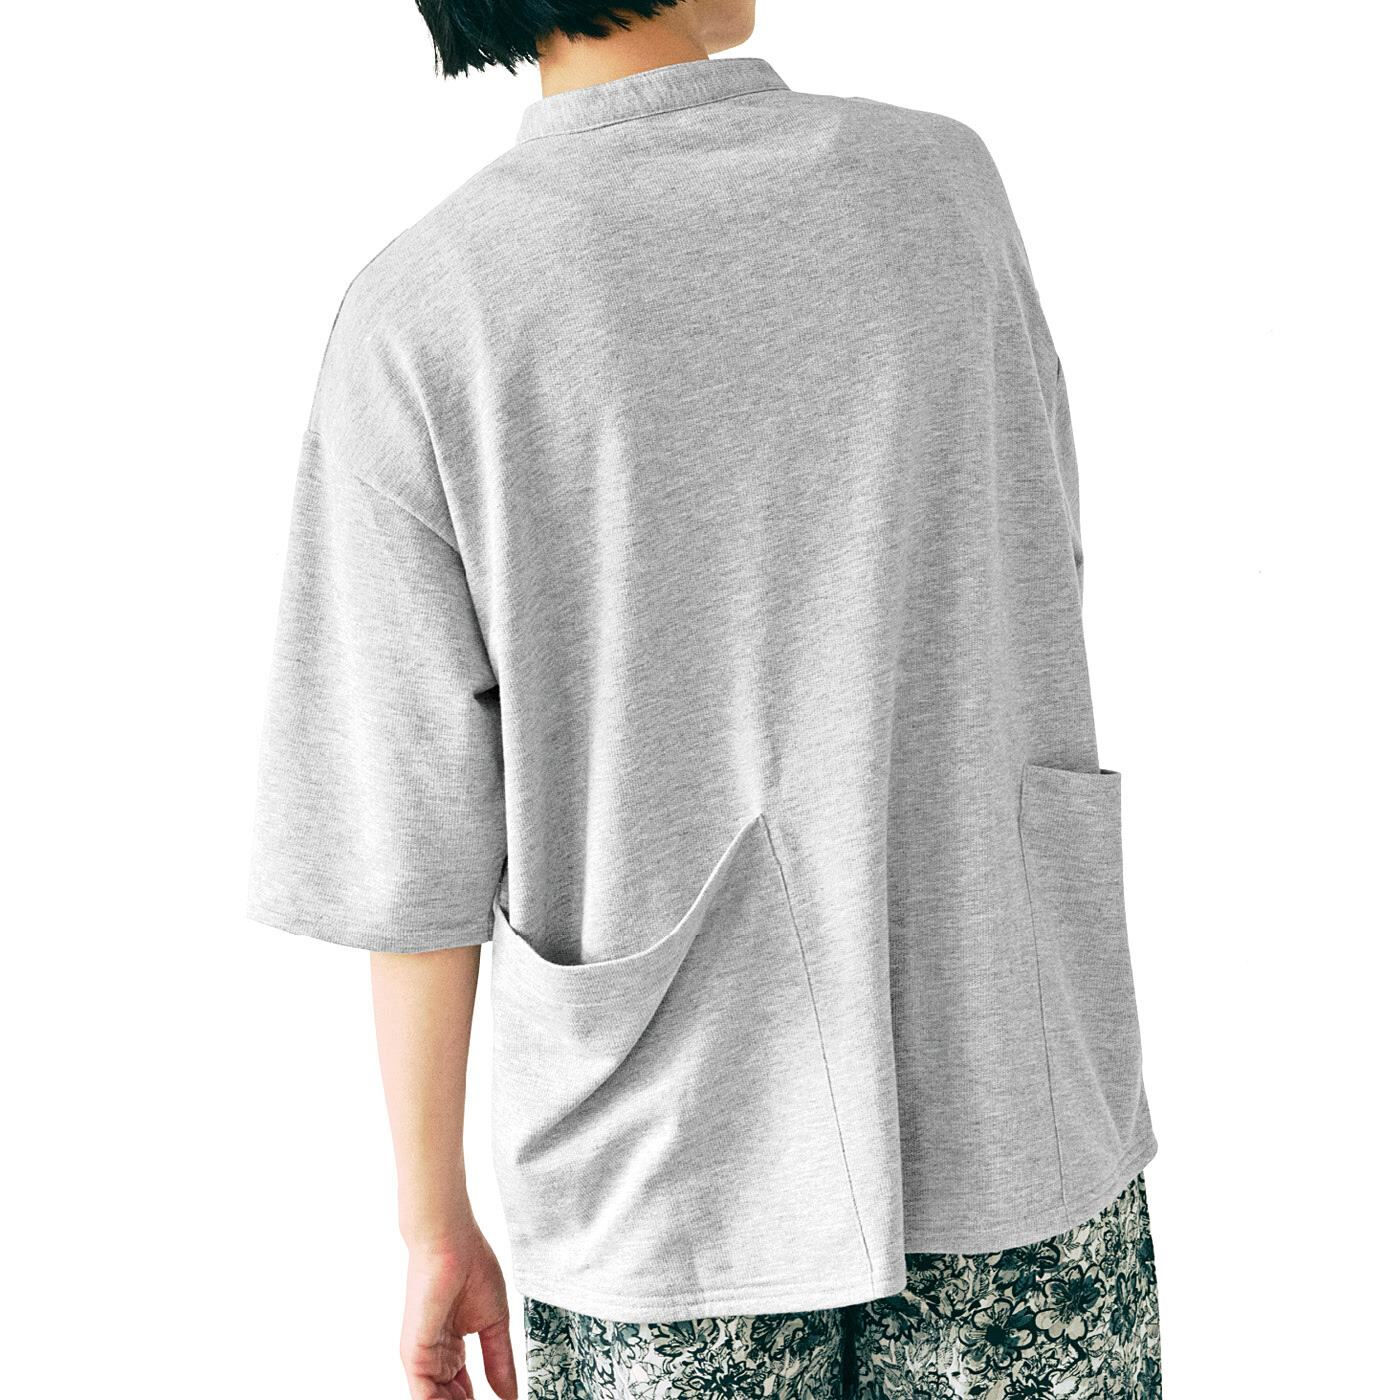 Real Stock|UP.de　着られるバッグ Tシャツ感覚なのにきれい見えする ポケットいっぱい てぶらなカットソースキッパーシャツ〈チャコールグレー〉|これは参考画像です。お届けするカラーとは異なります。